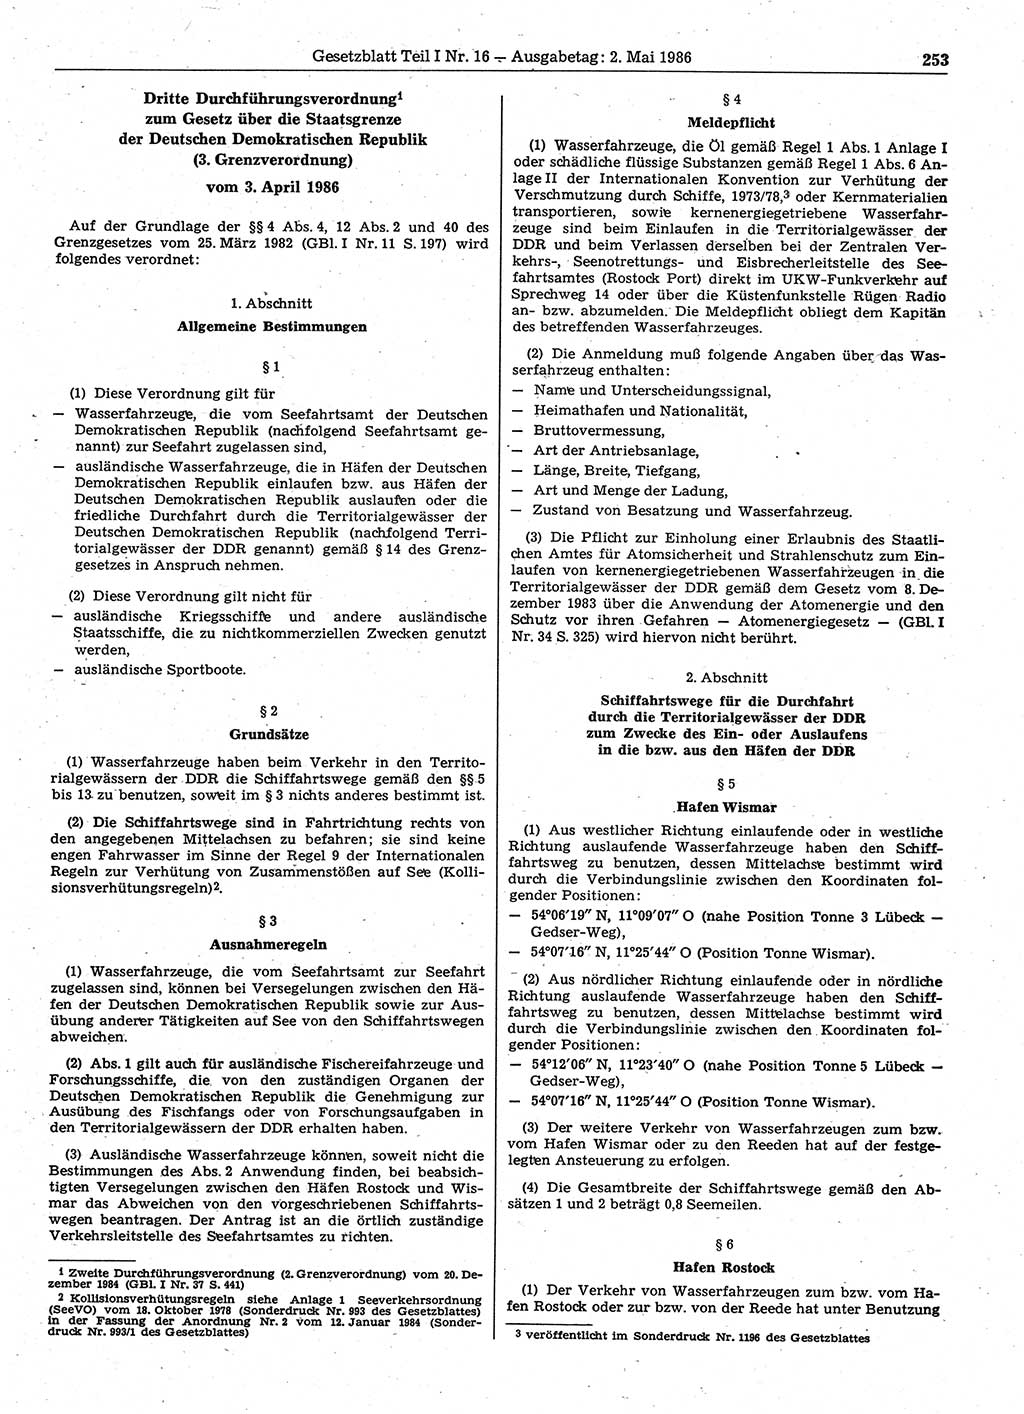 Gesetzblatt (GBl.) der Deutschen Demokratischen Republik (DDR) Teil Ⅰ 1986, Seite 253 (GBl. DDR Ⅰ 1986, S. 253)